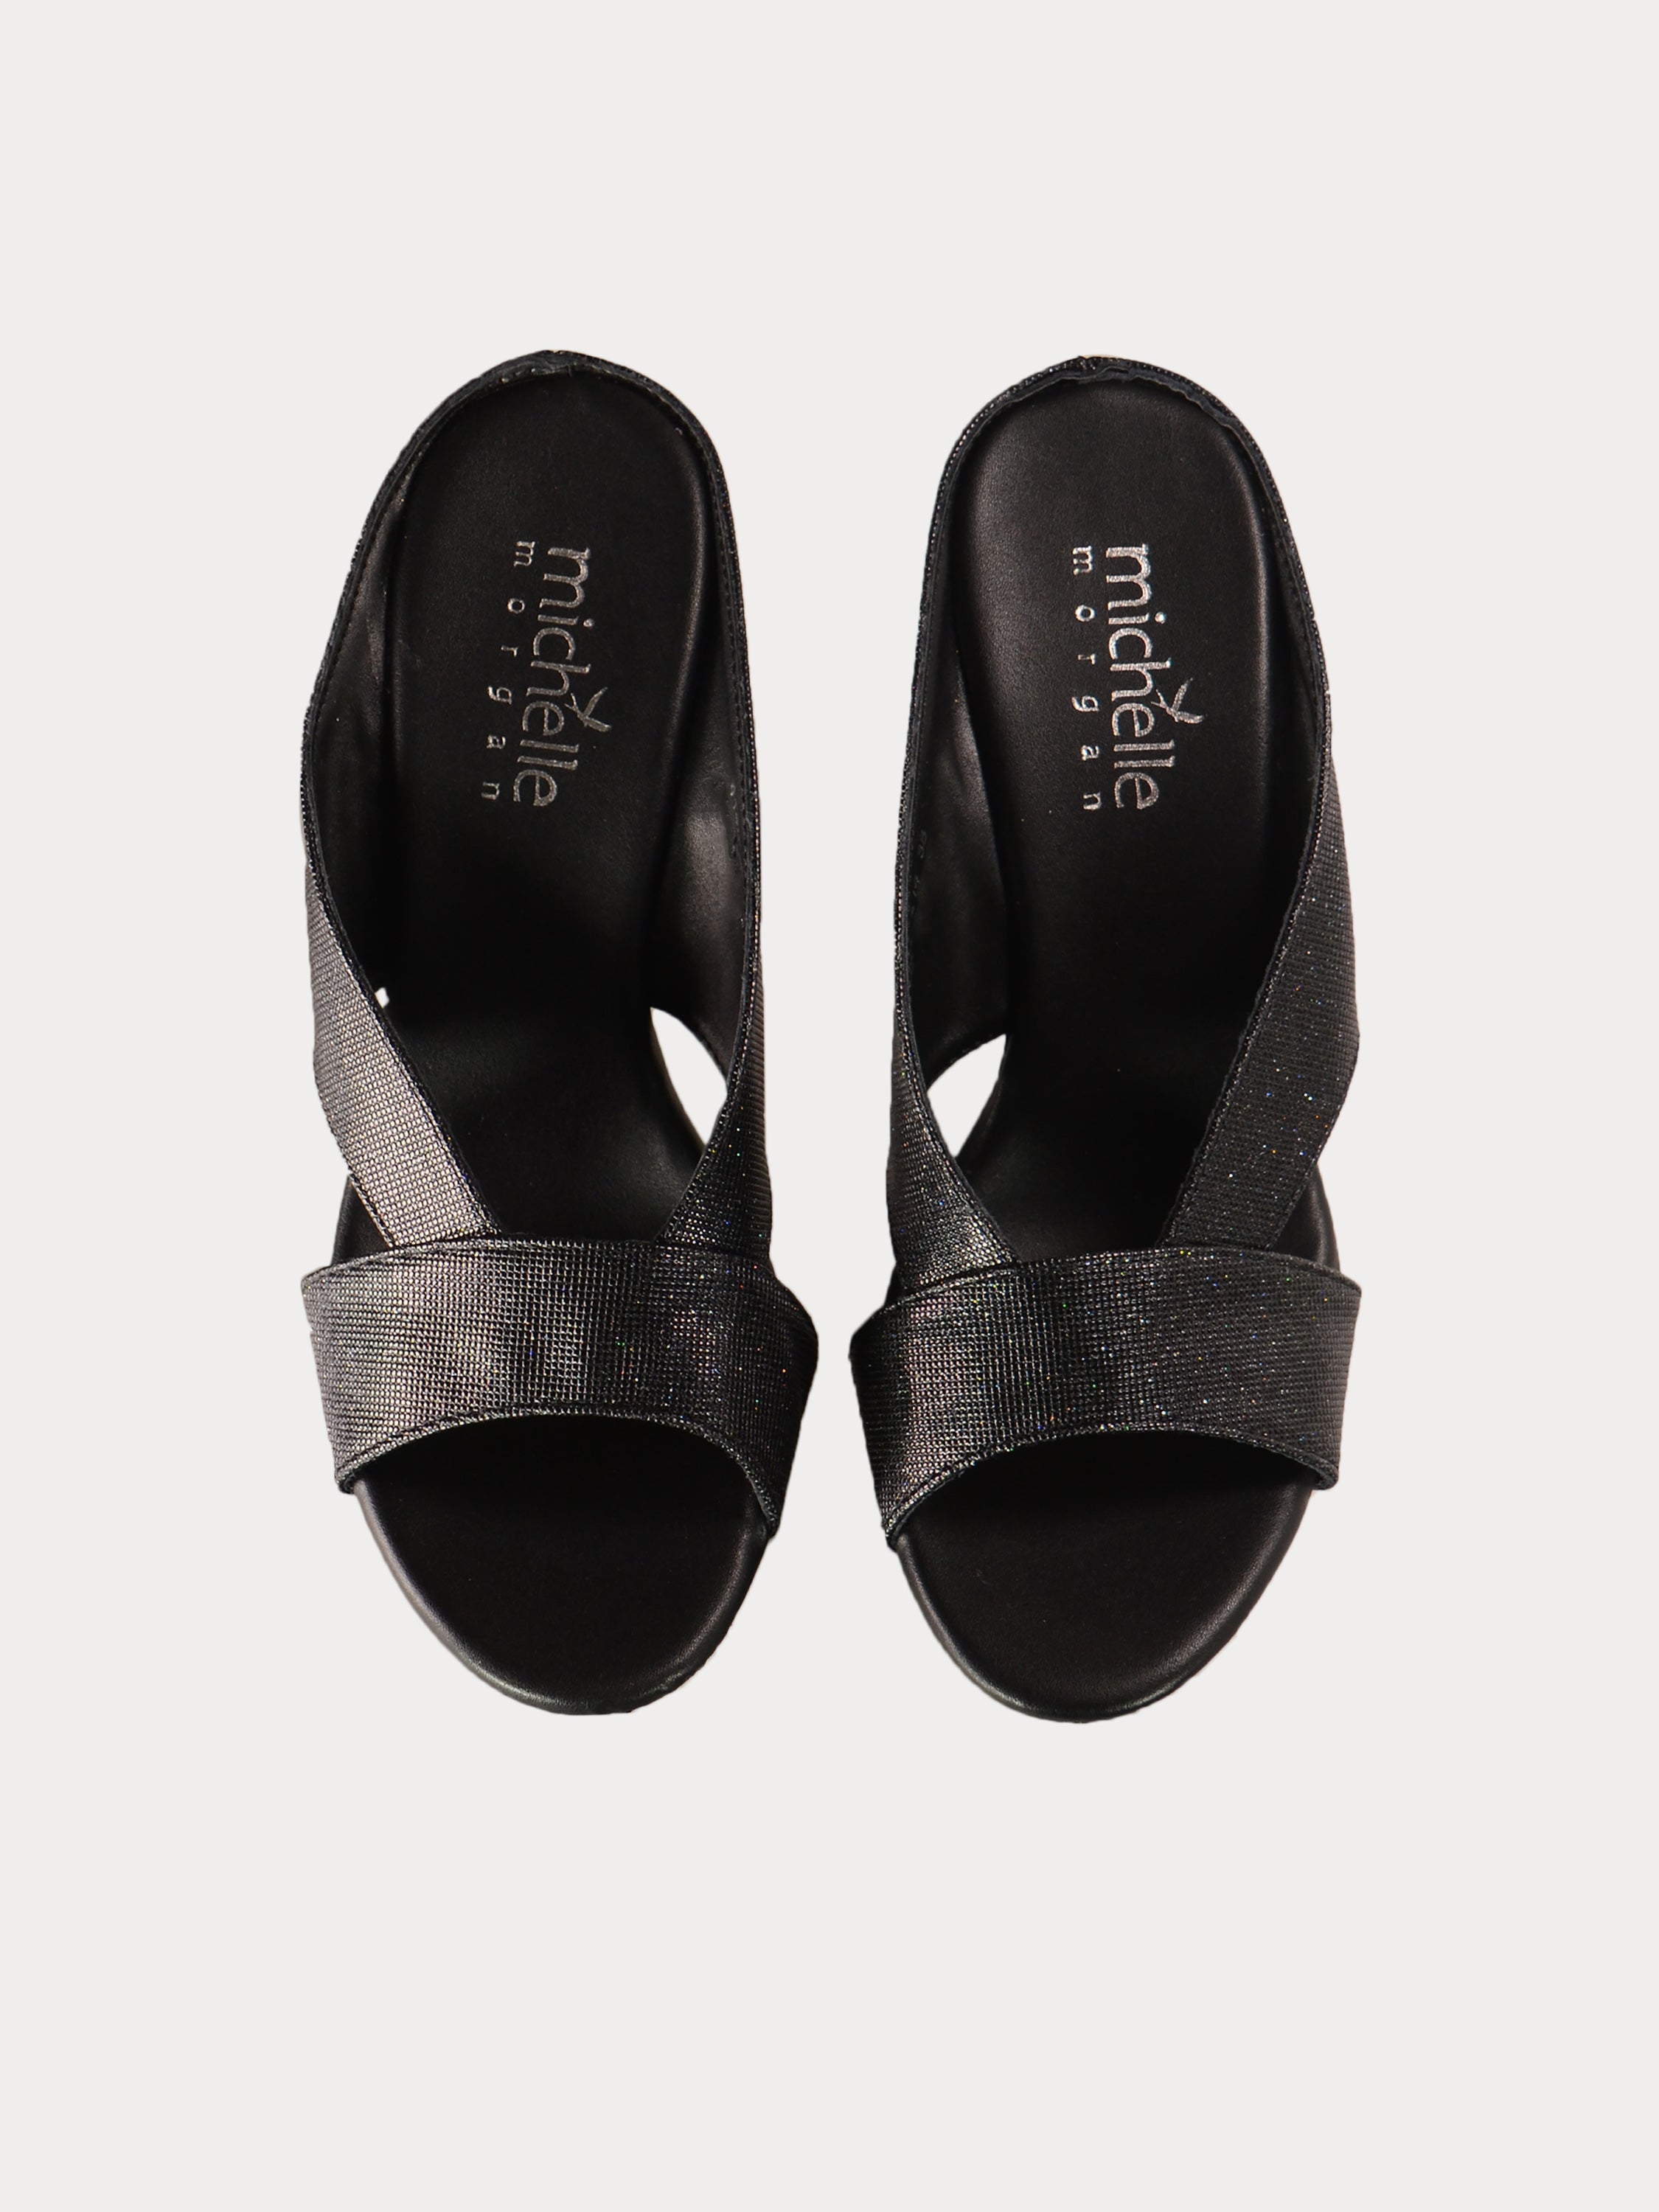 Michelle Morgan 414A7214 Glitzy Heeled Sandals #color_Black